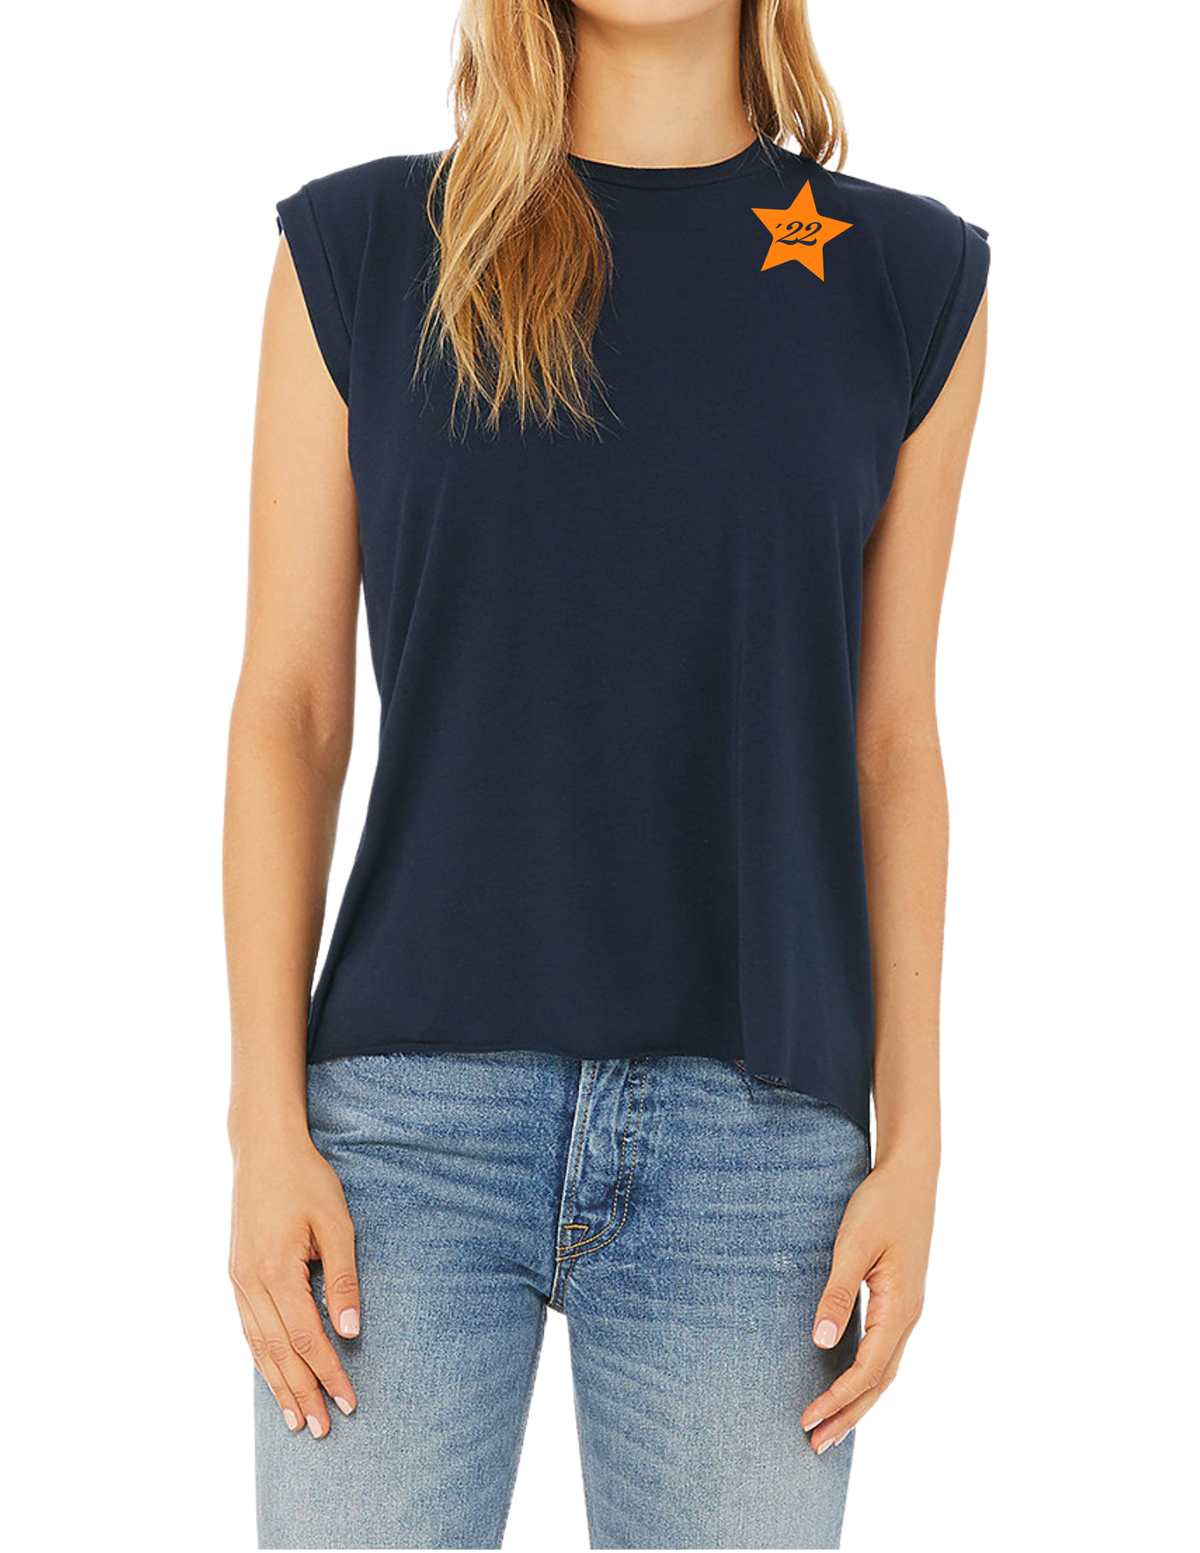 Stevie T-shirt | Baseball Star